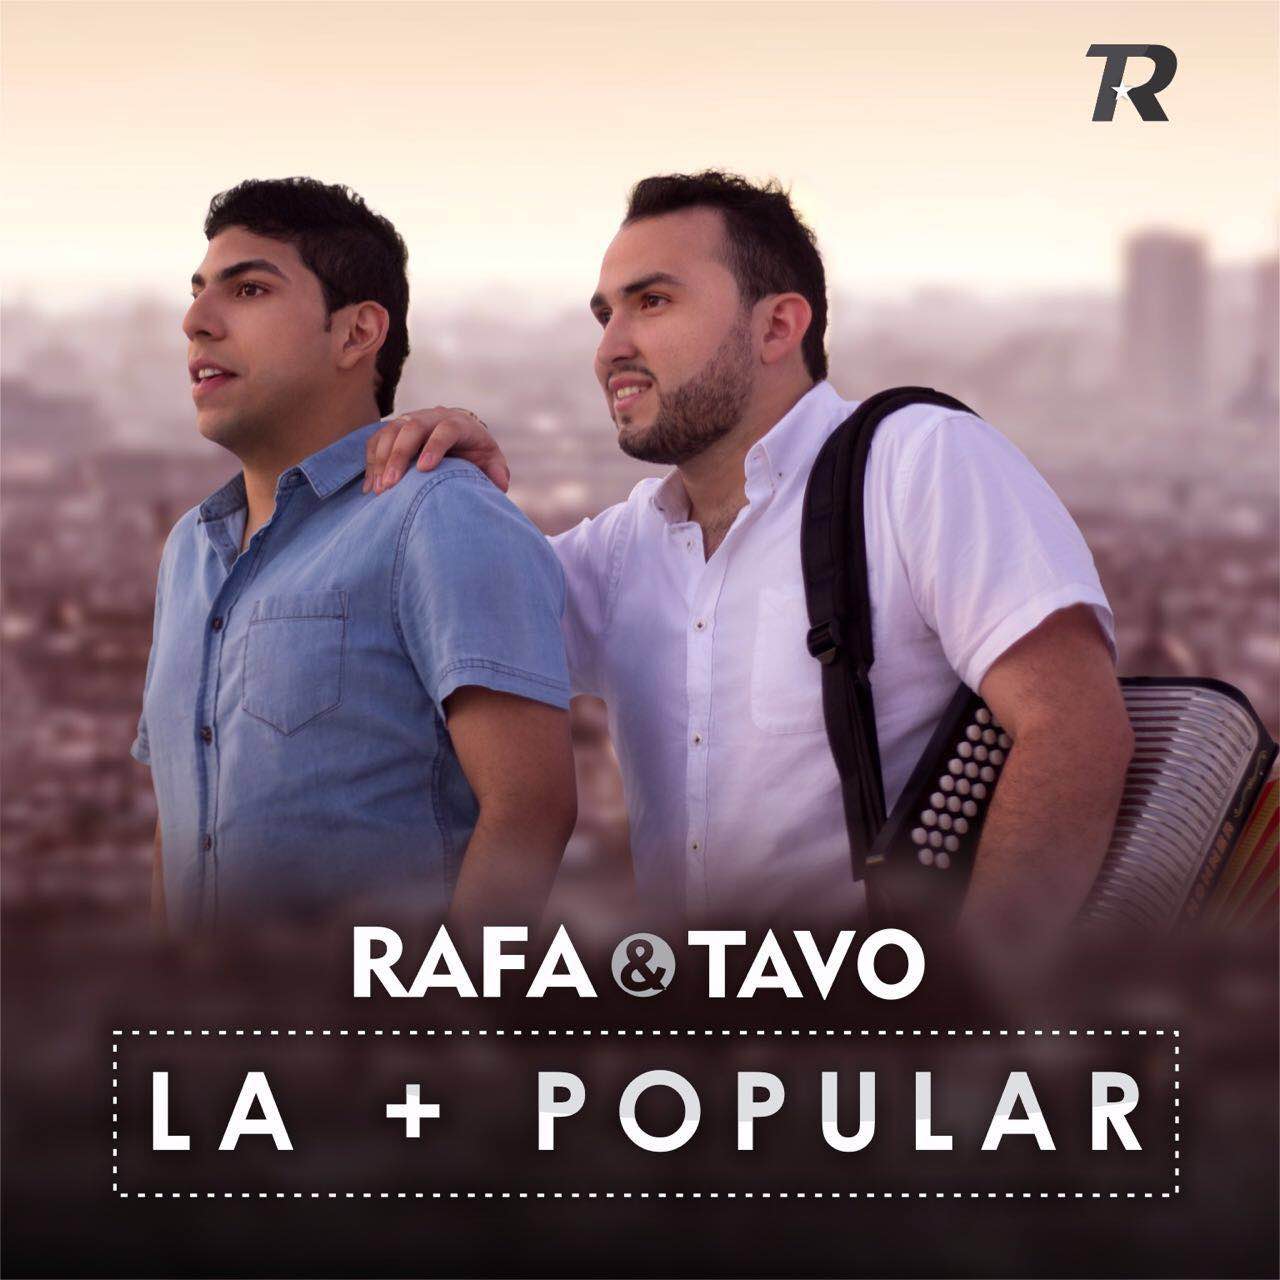  LA MAS POPULAR – RAFA OROZCO & TAVO